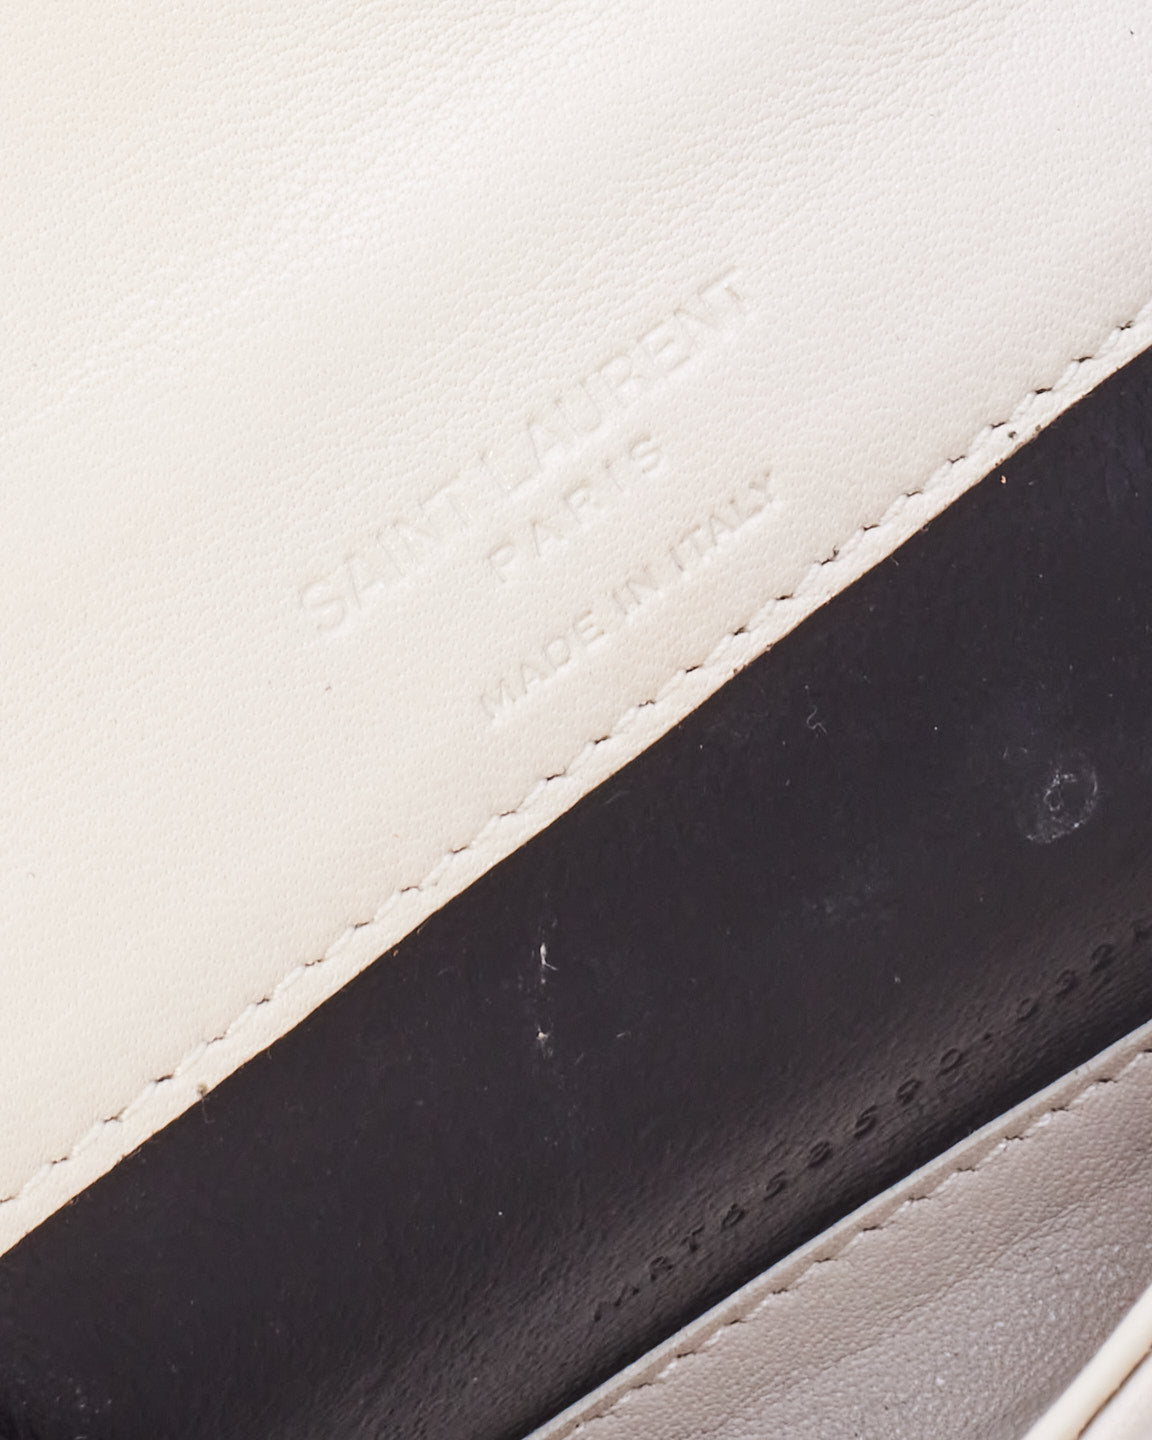 Saint Laurent Mini portefeuille en cuir matelassé blanc sur chaîne